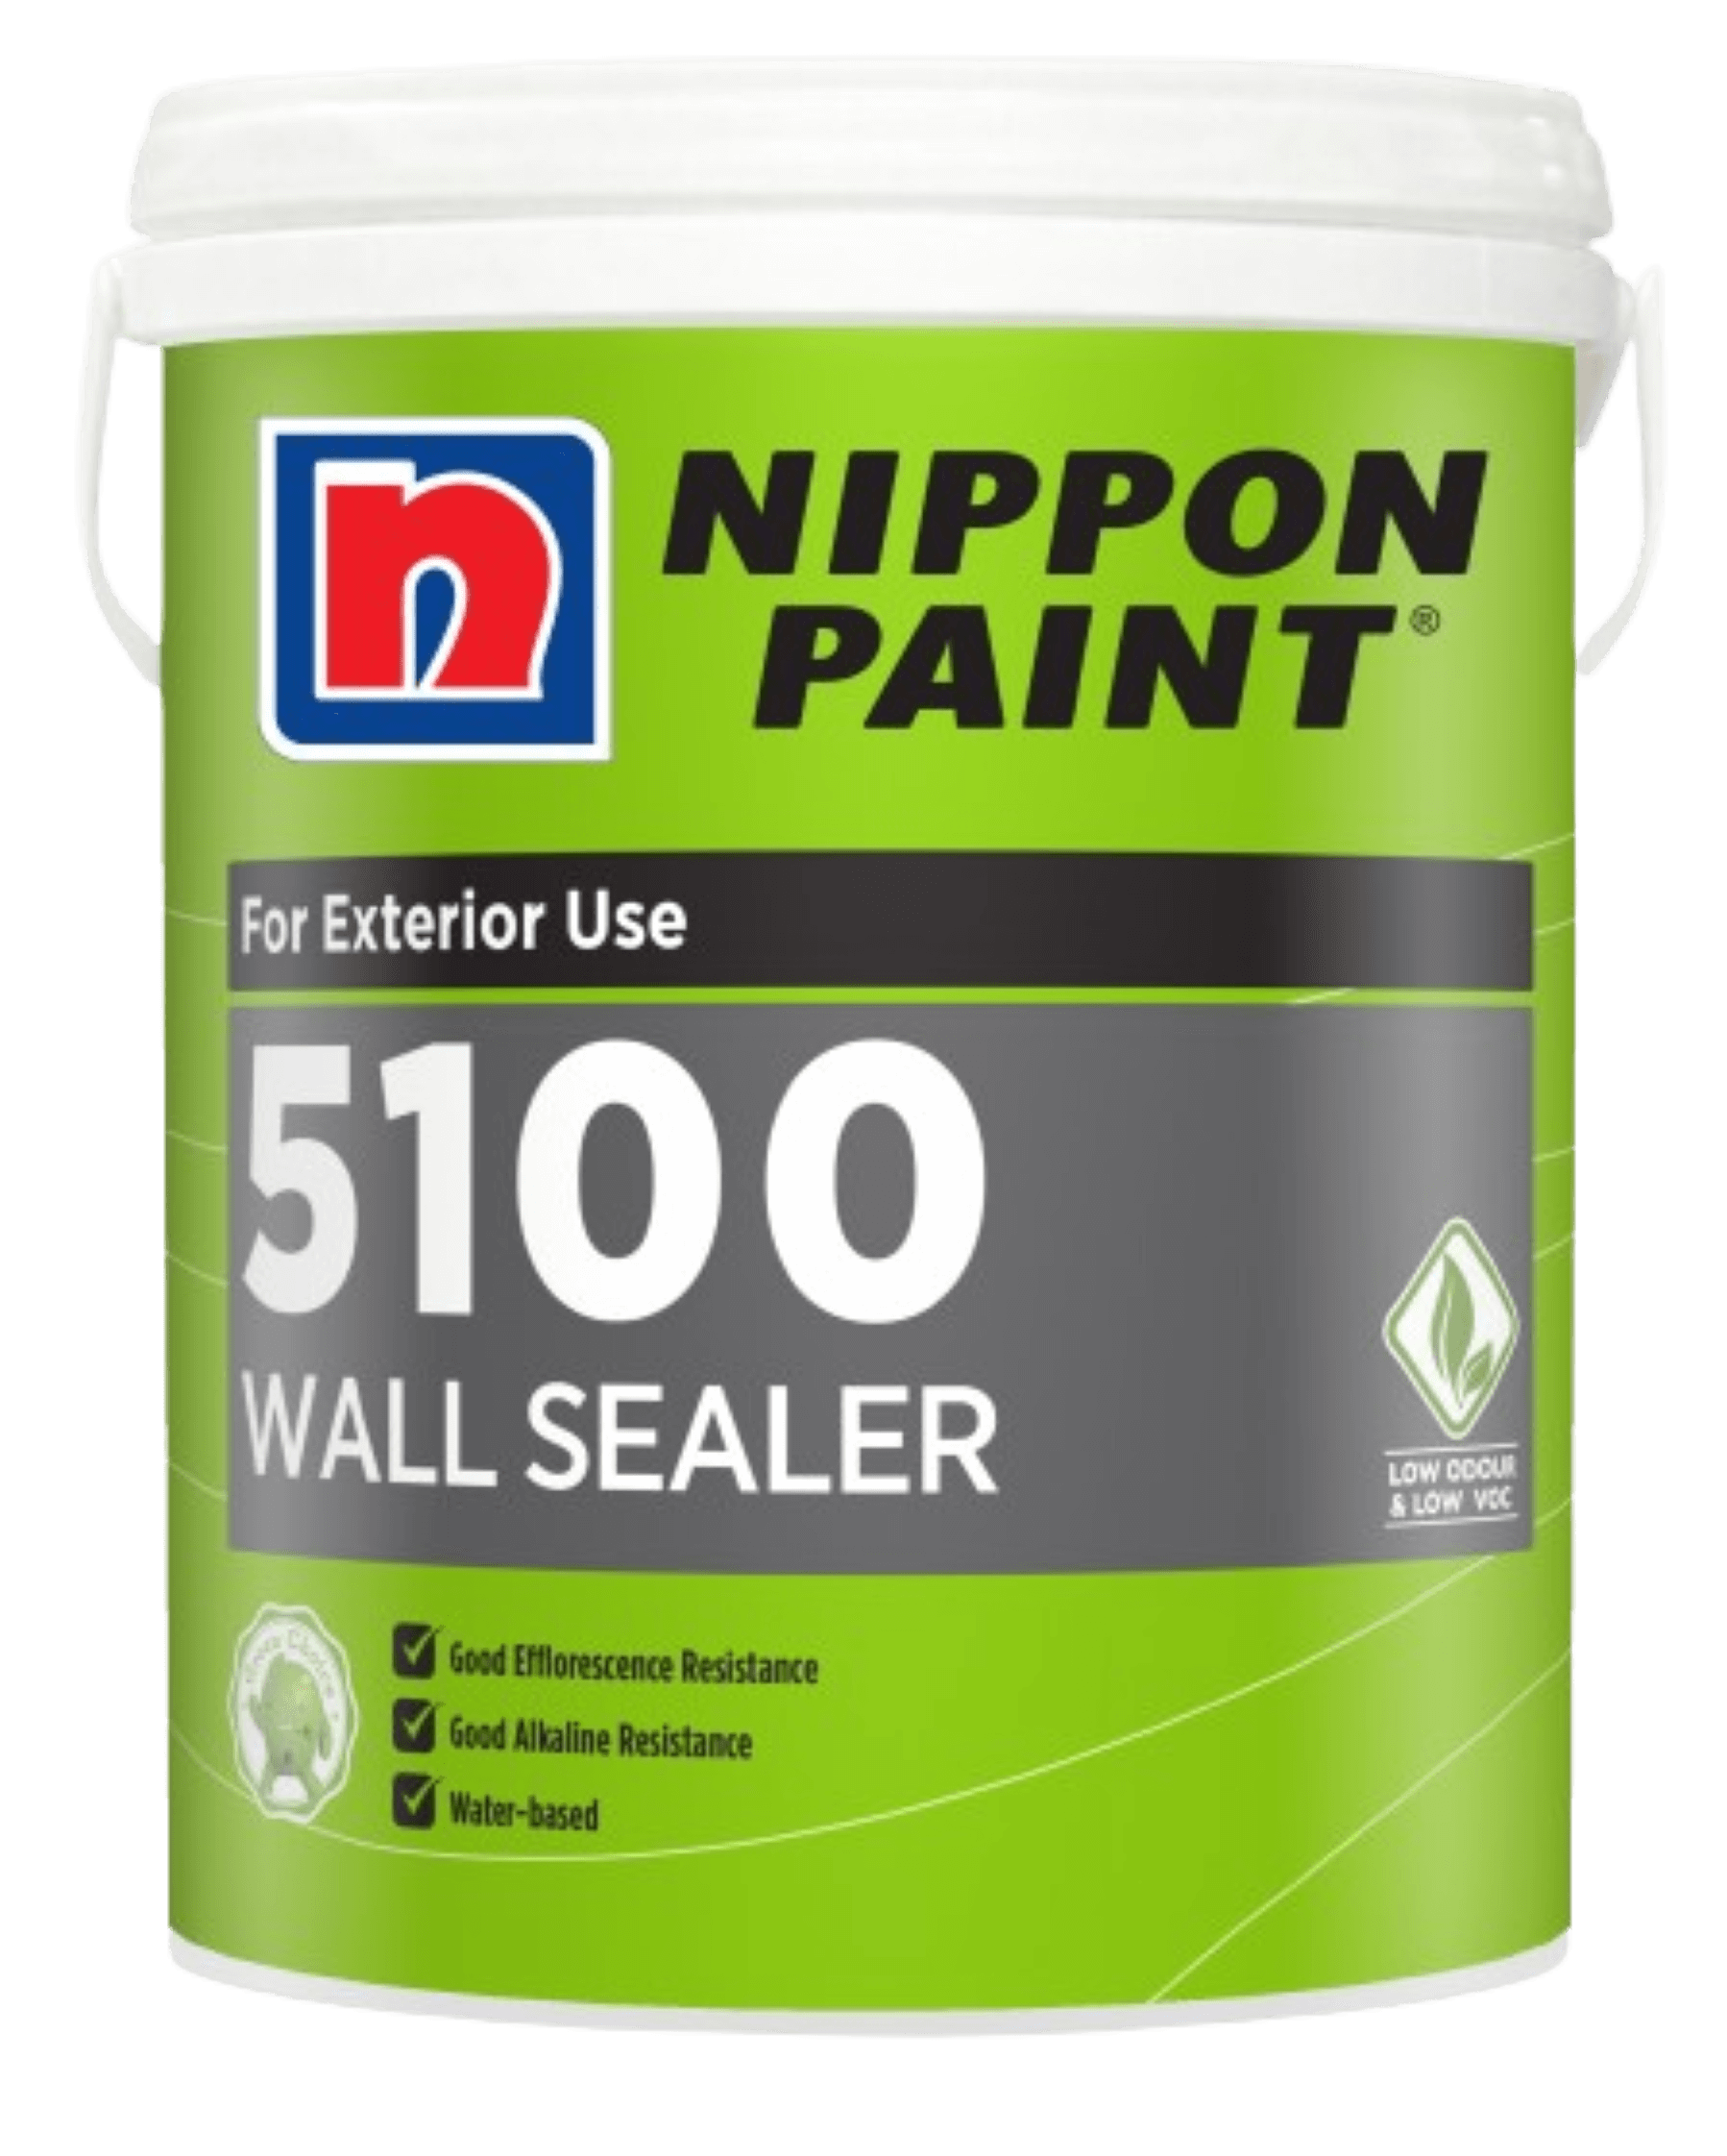 5100 Wall Sealer